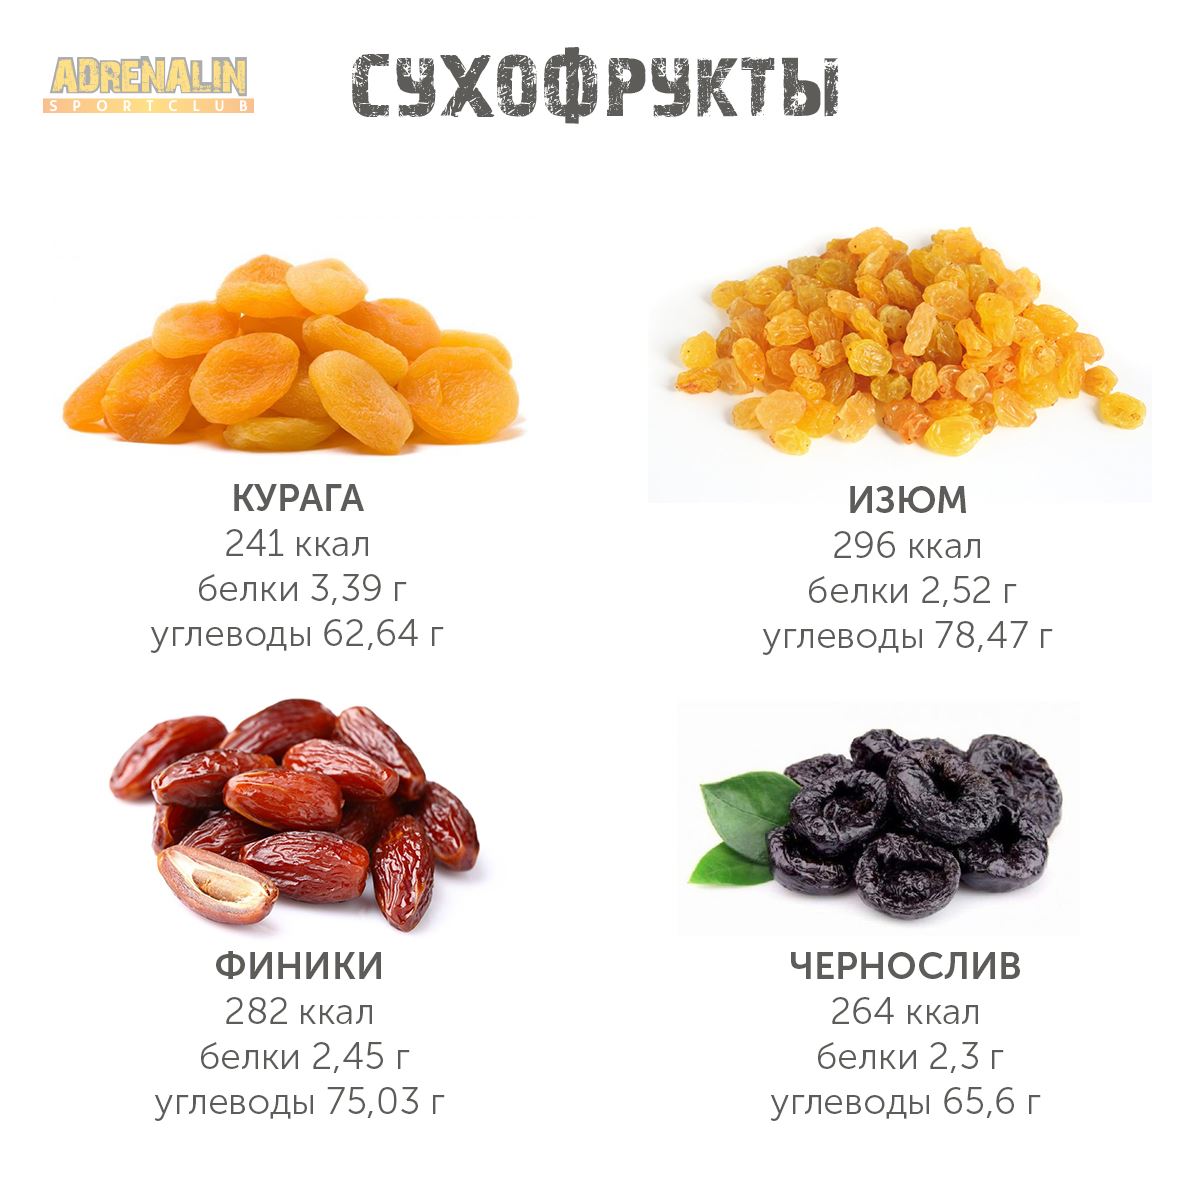 Мисо - свойстава и калорийность, польза и вред на your-diet.ru